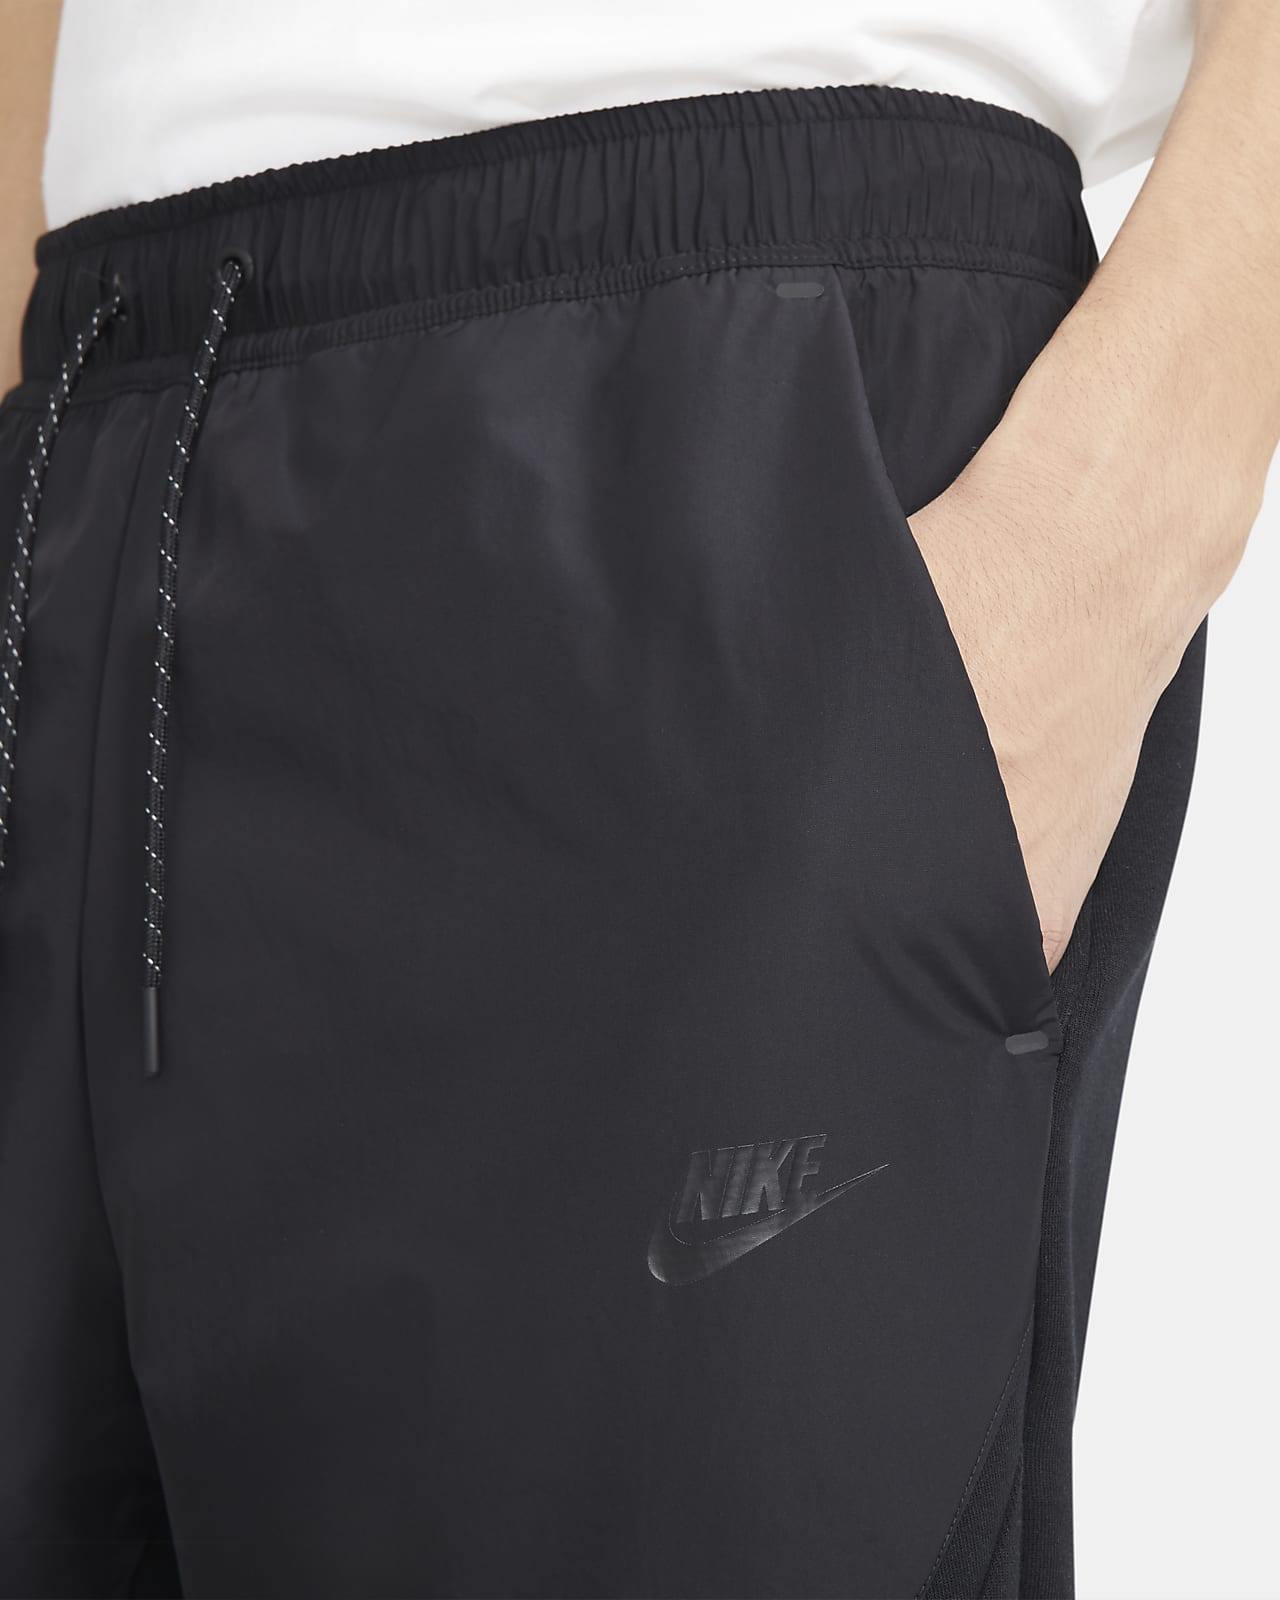 Buy > men's woven joggers nike sportswear tech fleece > in stock